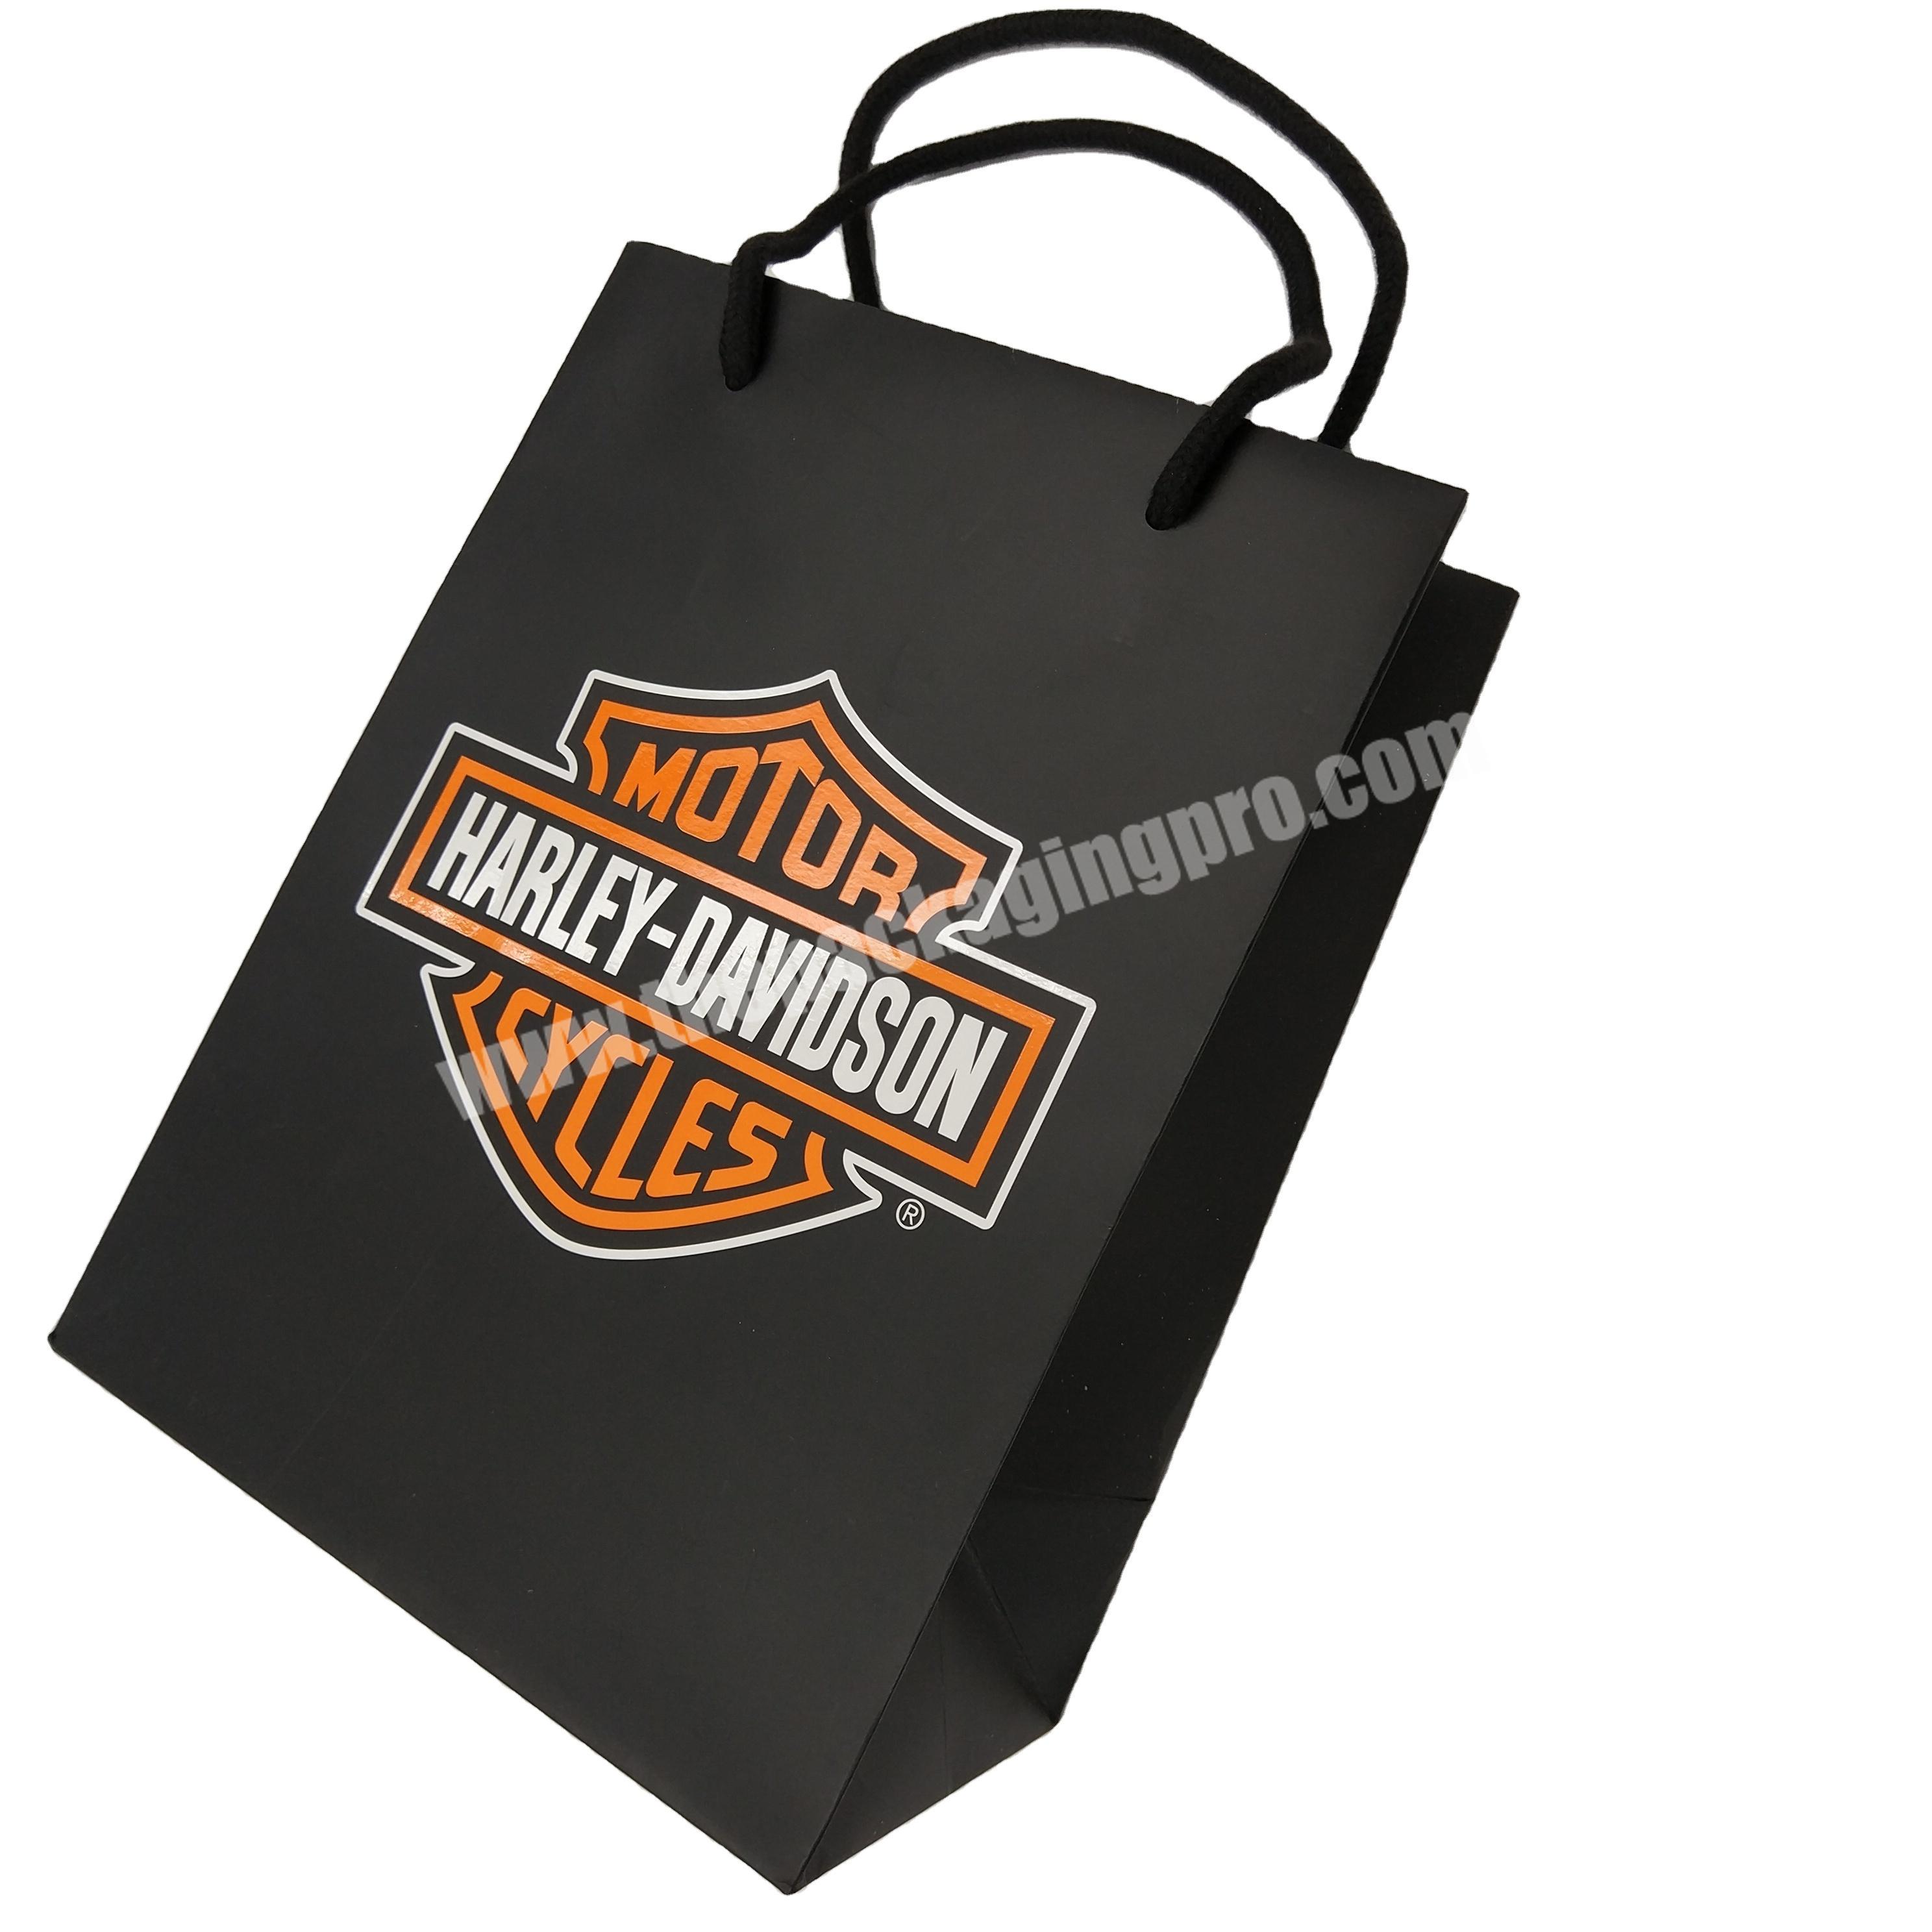 Matte black paper shopping bag with spot UV logo custom